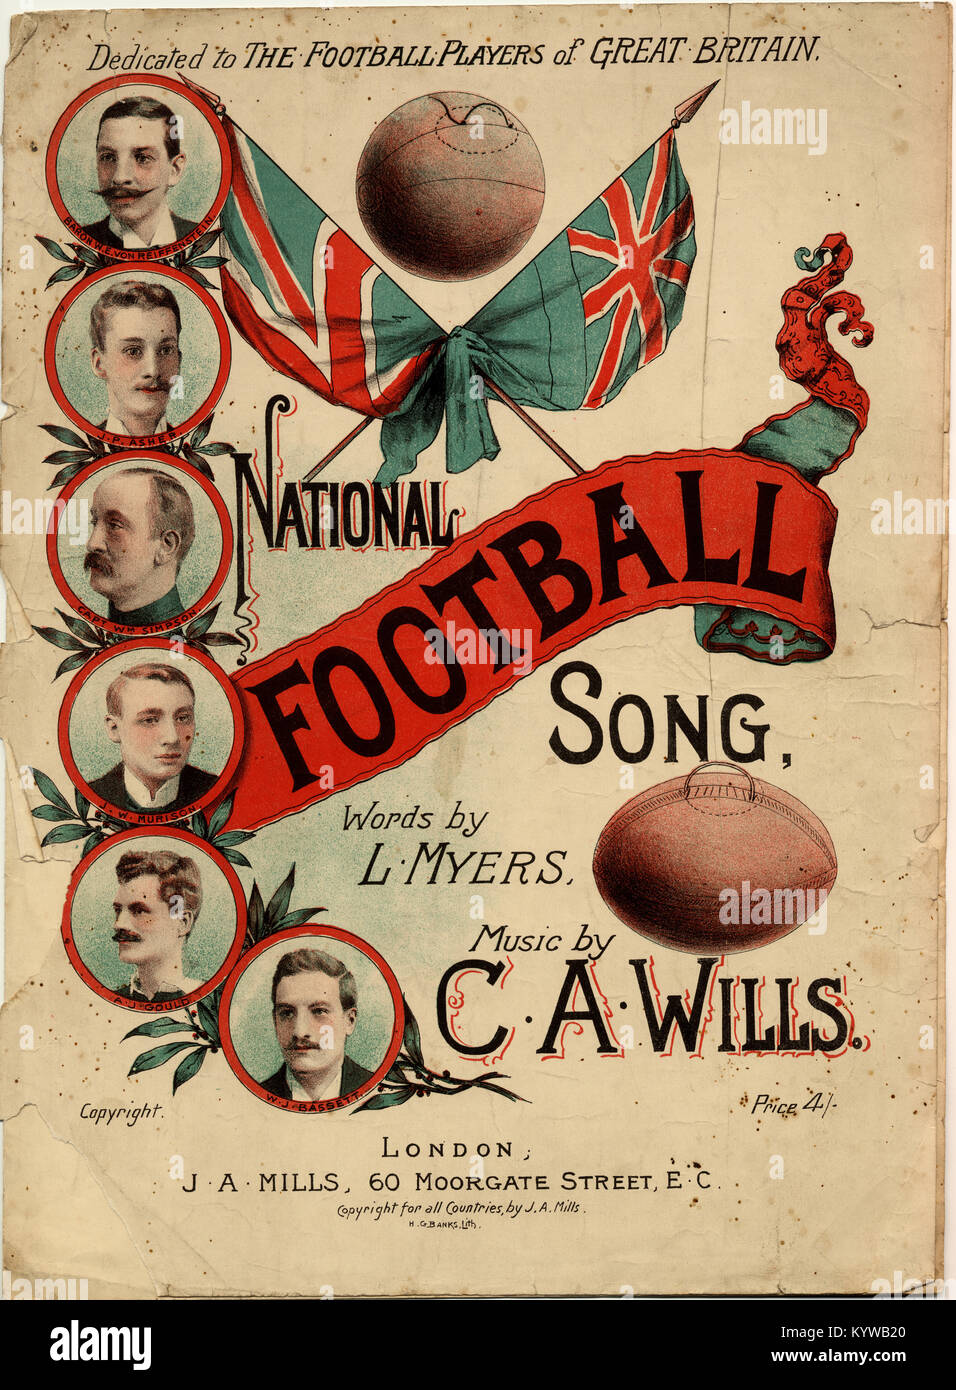 Nacional de Fútbol para el fútbol Song-Dedicated pares de Gran Bretaña Foto de stock